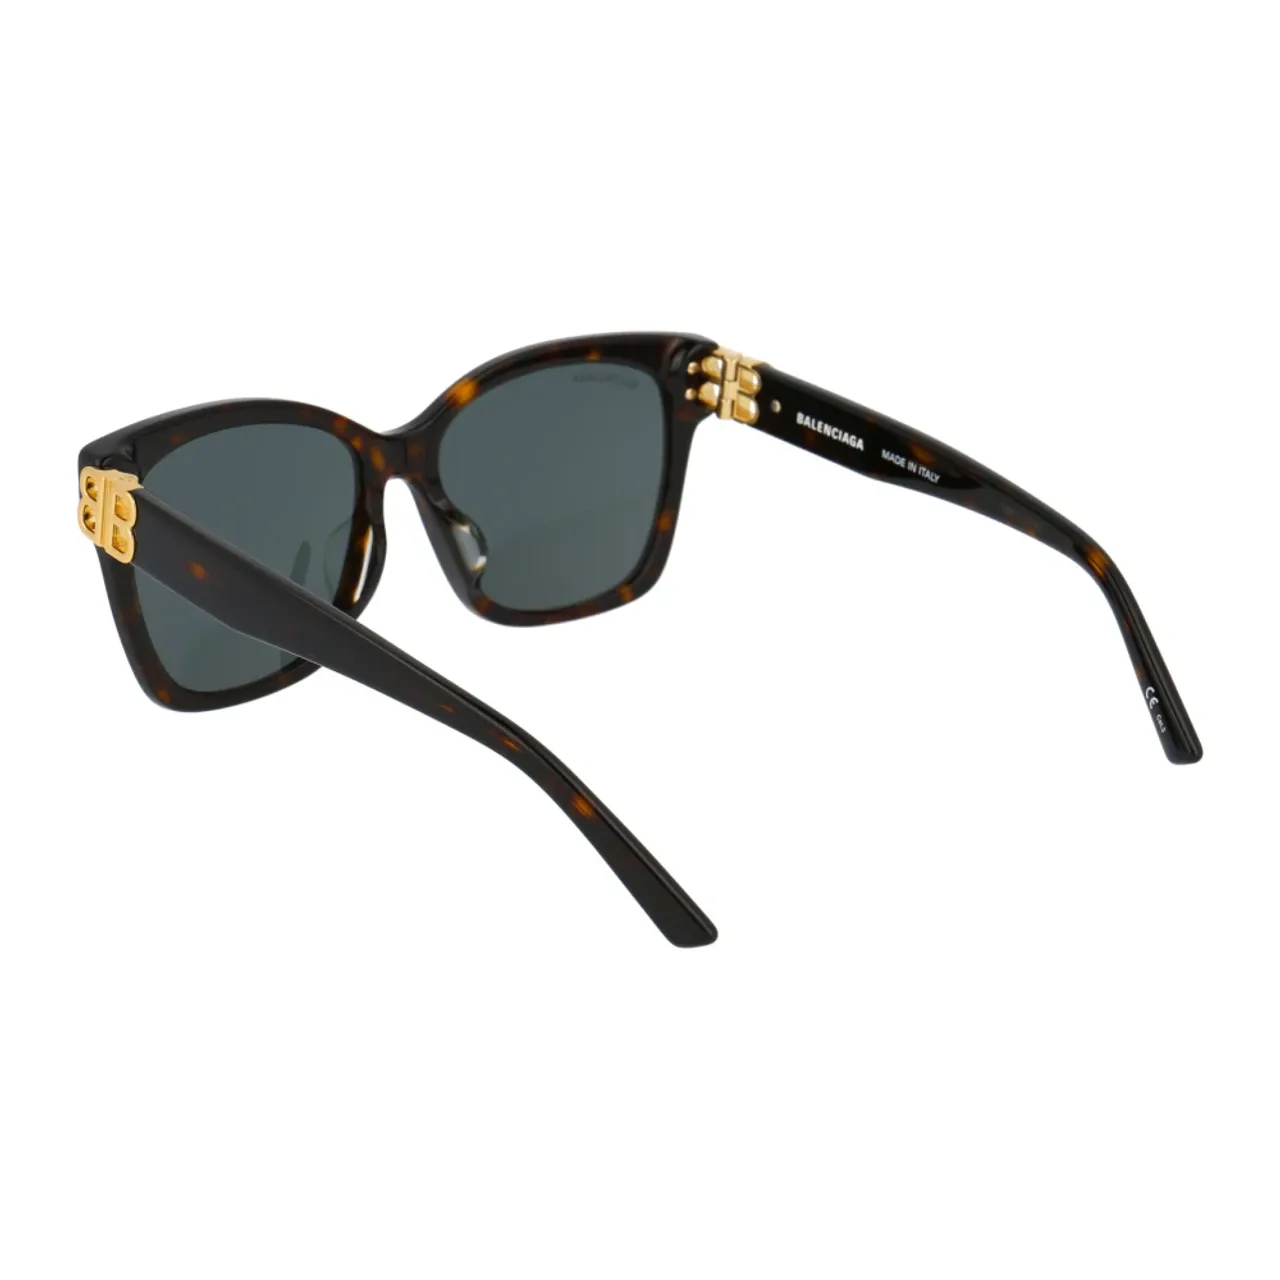 Stylische Sonnenbrille Bb0102Sa Balenciaga